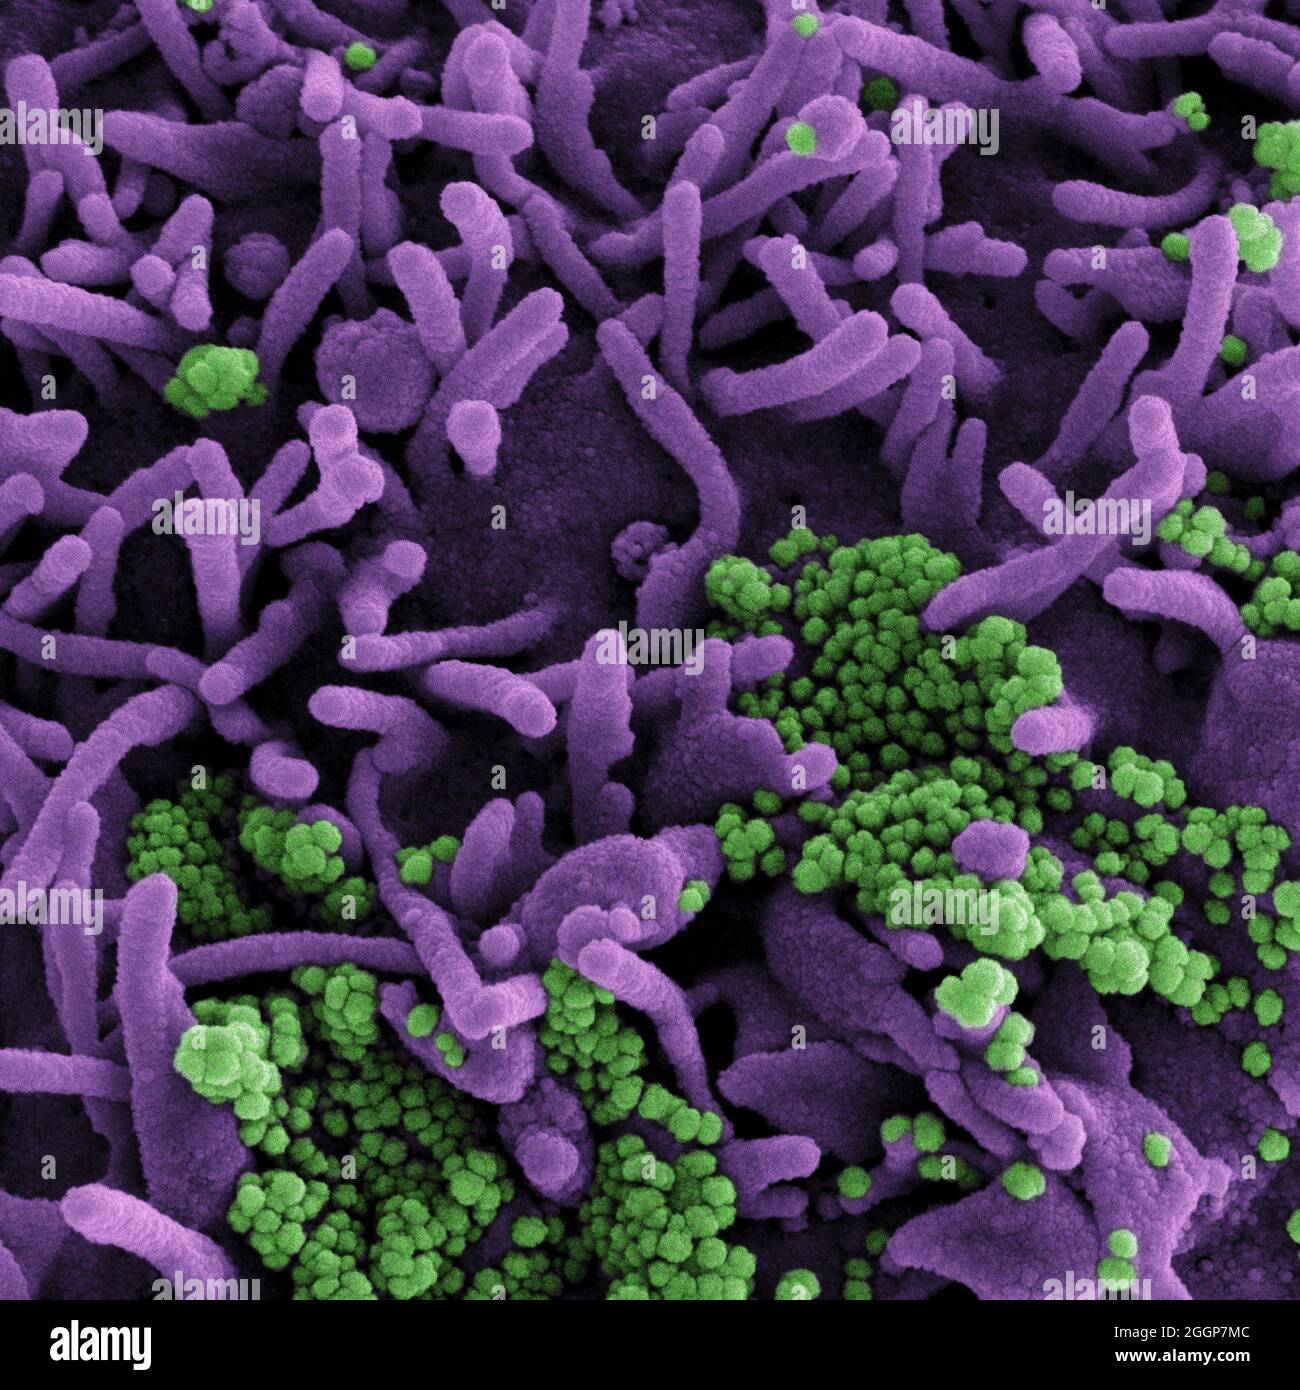 Micrografia elettronica a scansione colorata di una cellula (viola) infettata con particelle di virus SARS-COV-2 (verde), isolata da un campione di paziente. Foto Stock